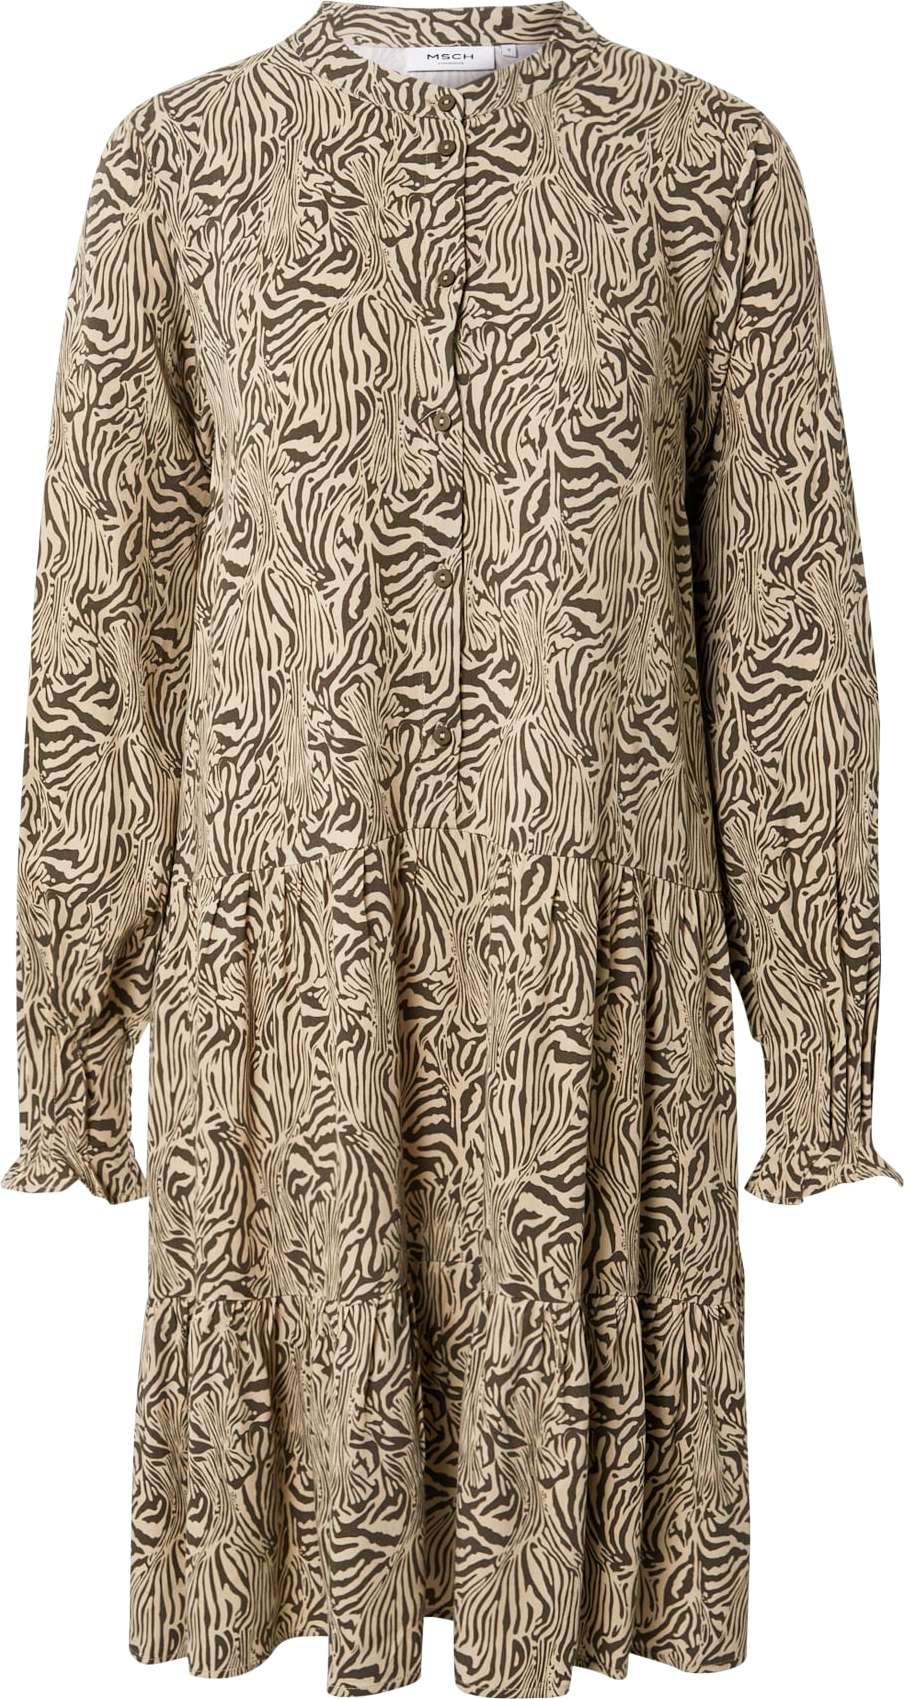 MOSS COPENHAGEN Košilové šaty 'Petina' světle hnědá / tmavě hnědá